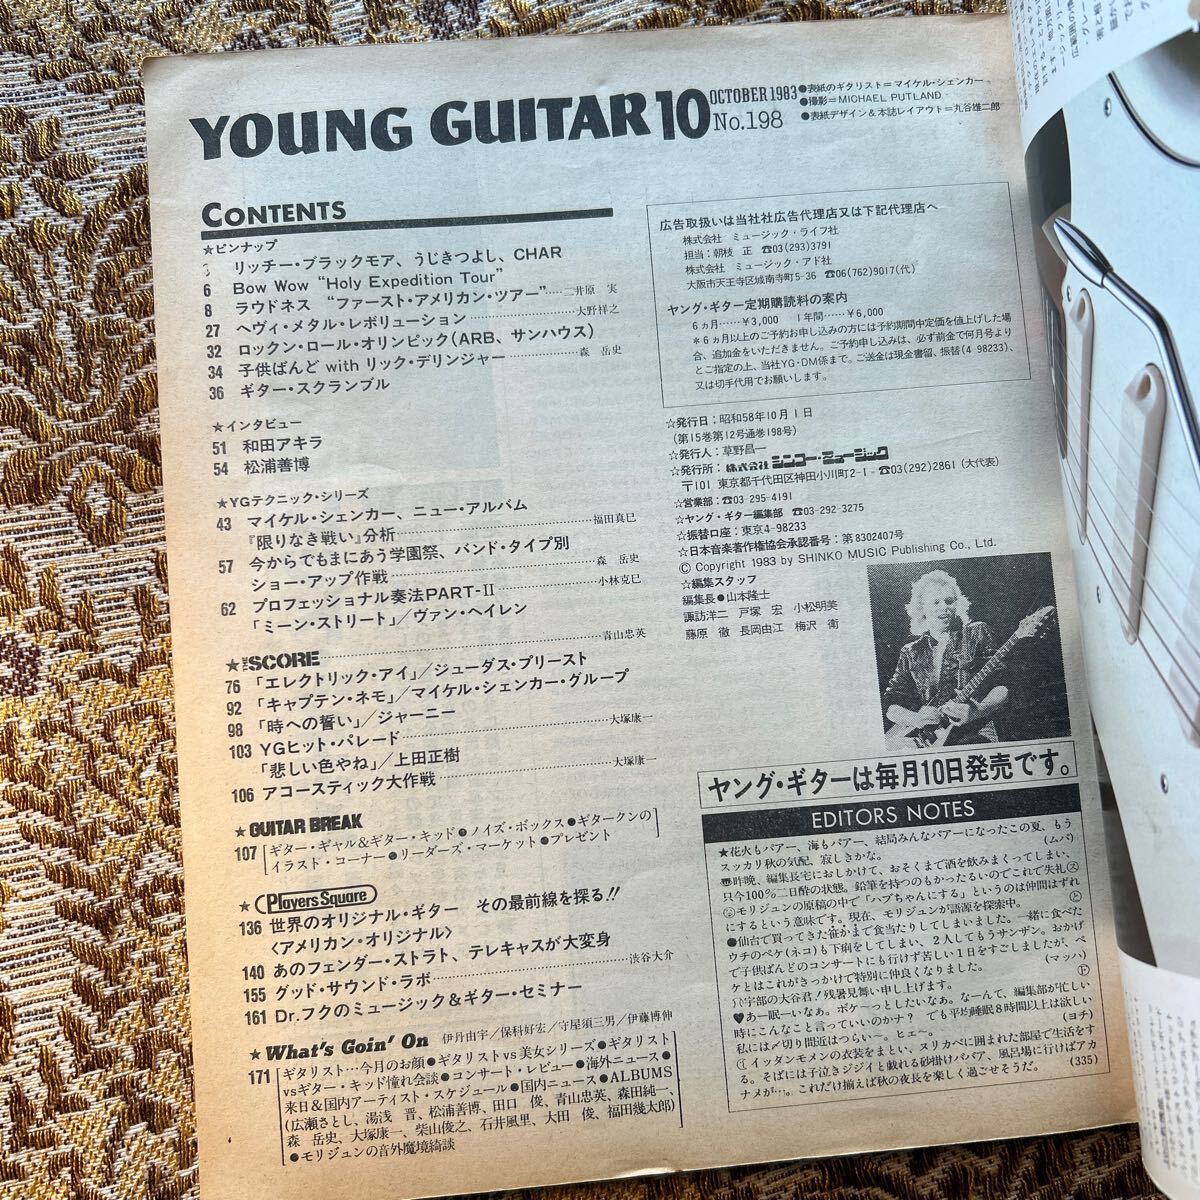  высшее редкий YOUNG GUITAR( Young гитара ) 1983 год 10 месяц номер / Hamada Mari Michael *shen машина Edward * Van * разделение Len громкий nes Takasaki .